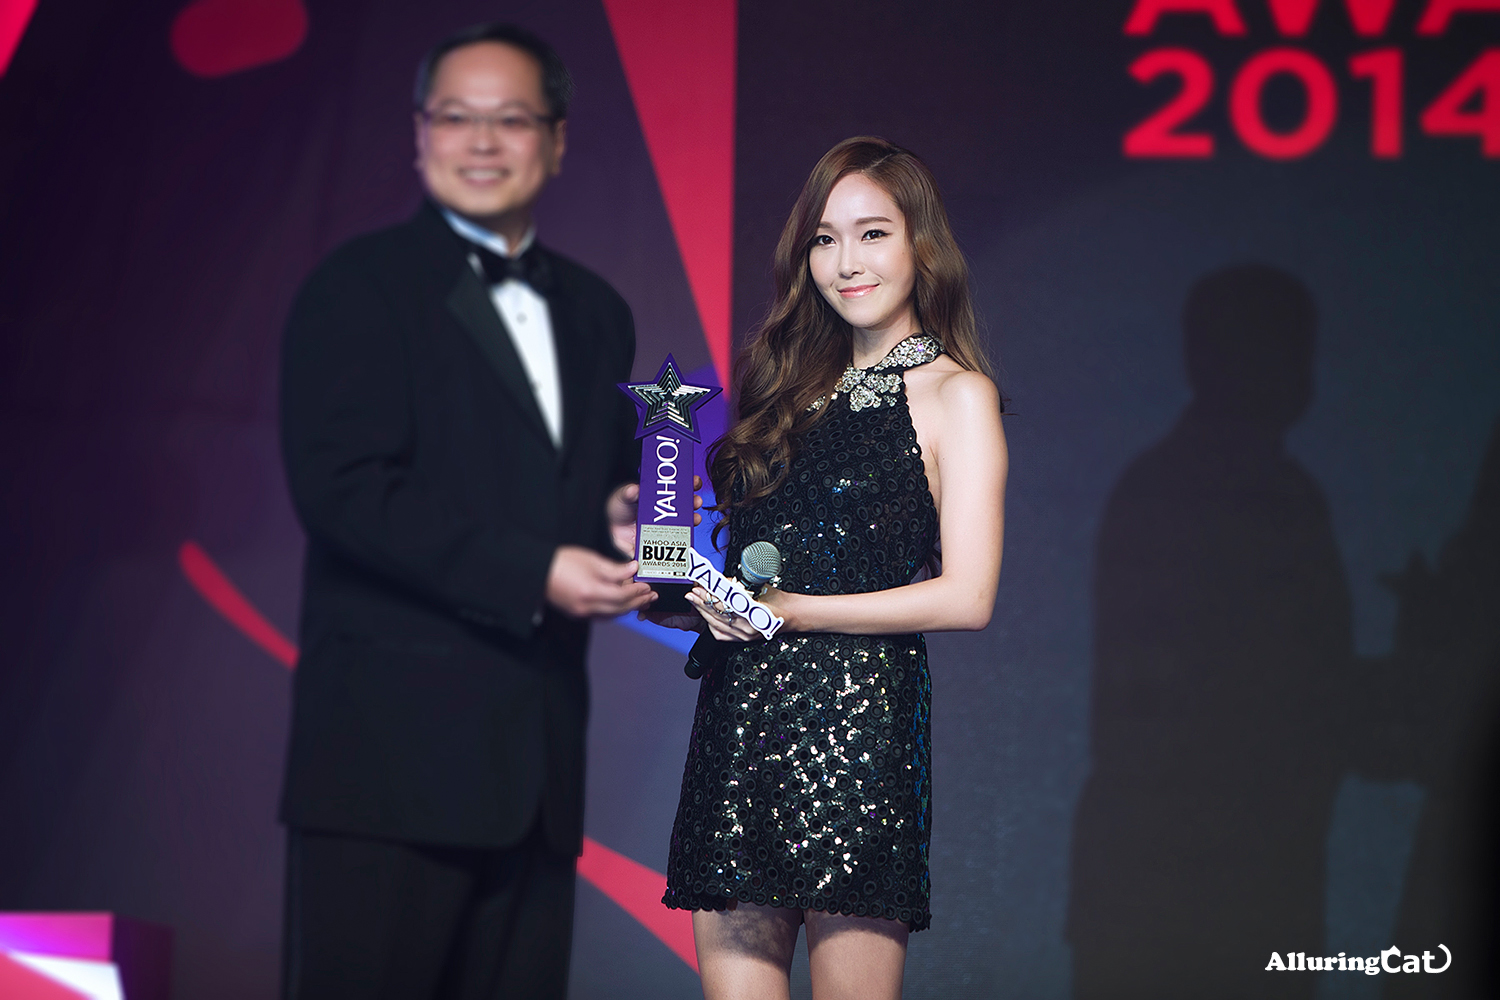 [PIC][07-12-2014]Jessica khởi hành đi Hồng Kông để tham dự "Yahoo Asia Buzz Award 2014" vào sáng nay - Page 3 2763F03754B514422DFC3B